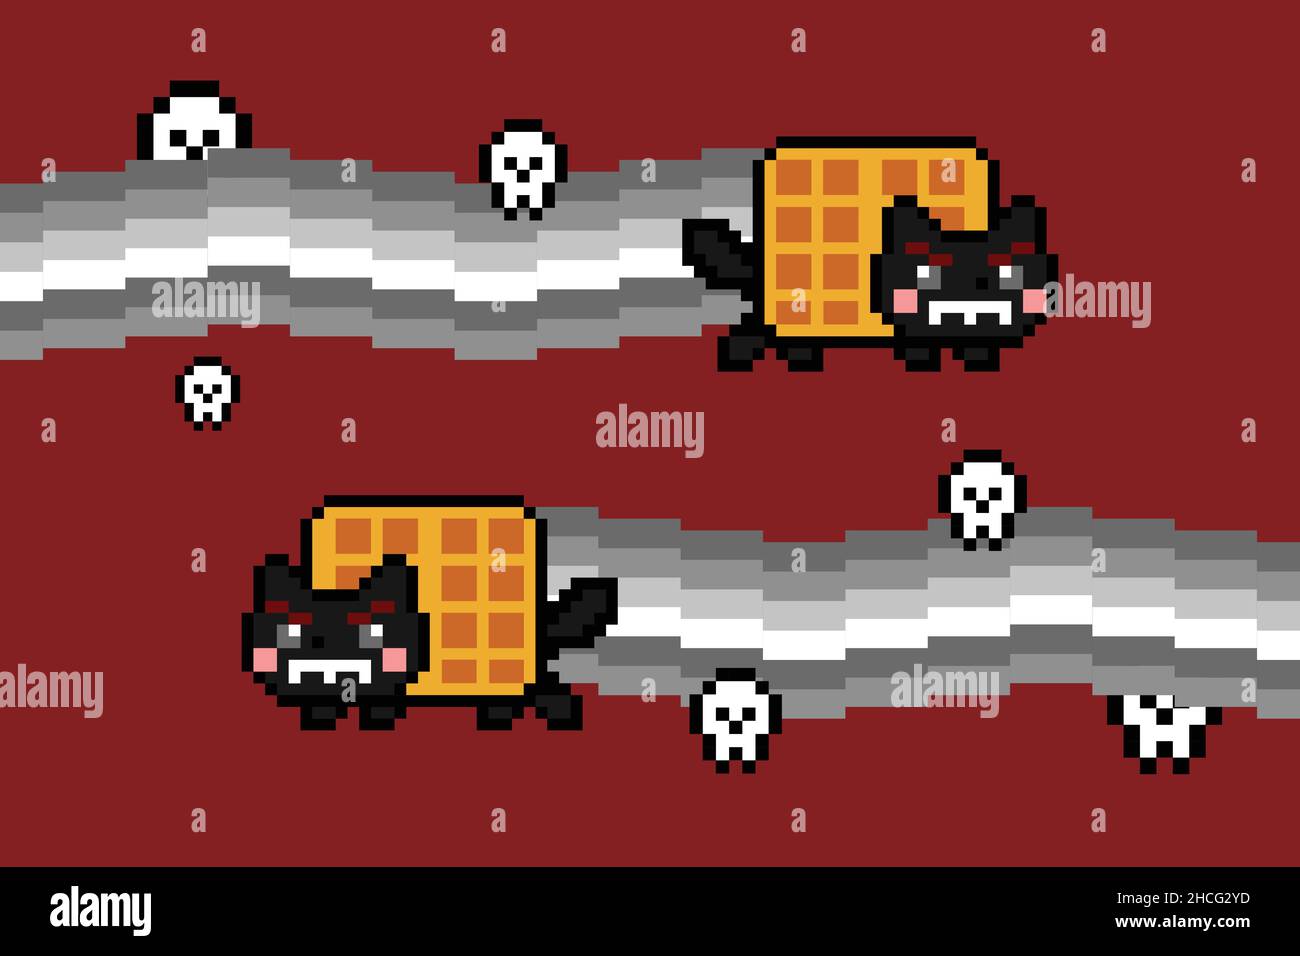 Böse schwarze Waffel Katze und Graustufen Rauch und Schädel Vektor Meme. Farbenfrohe 8-Bit-Pixel-Kunst. Flache digitale Vektorgrafik Stock Vektor